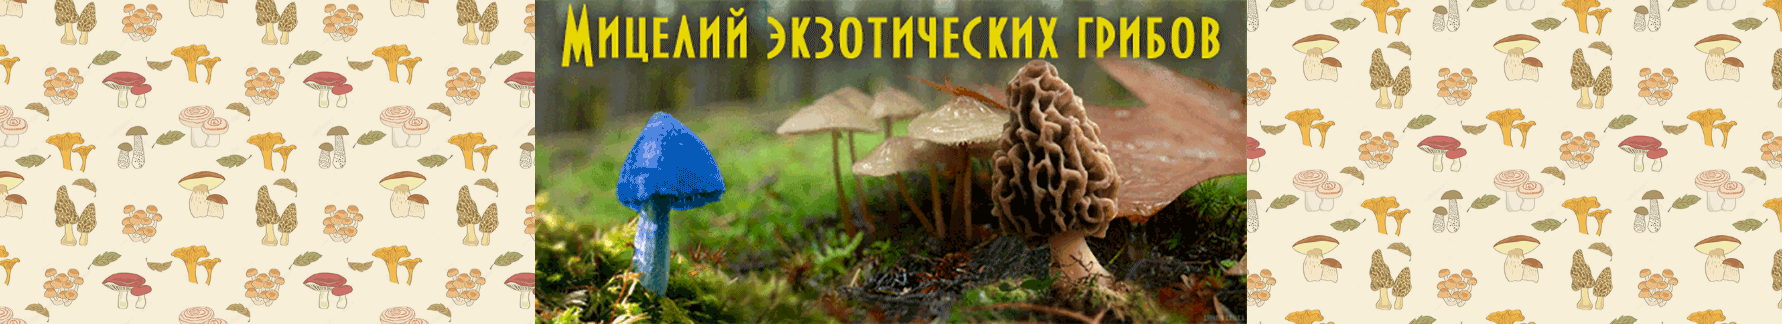 Новый ассортимент мицелия редких грибов!